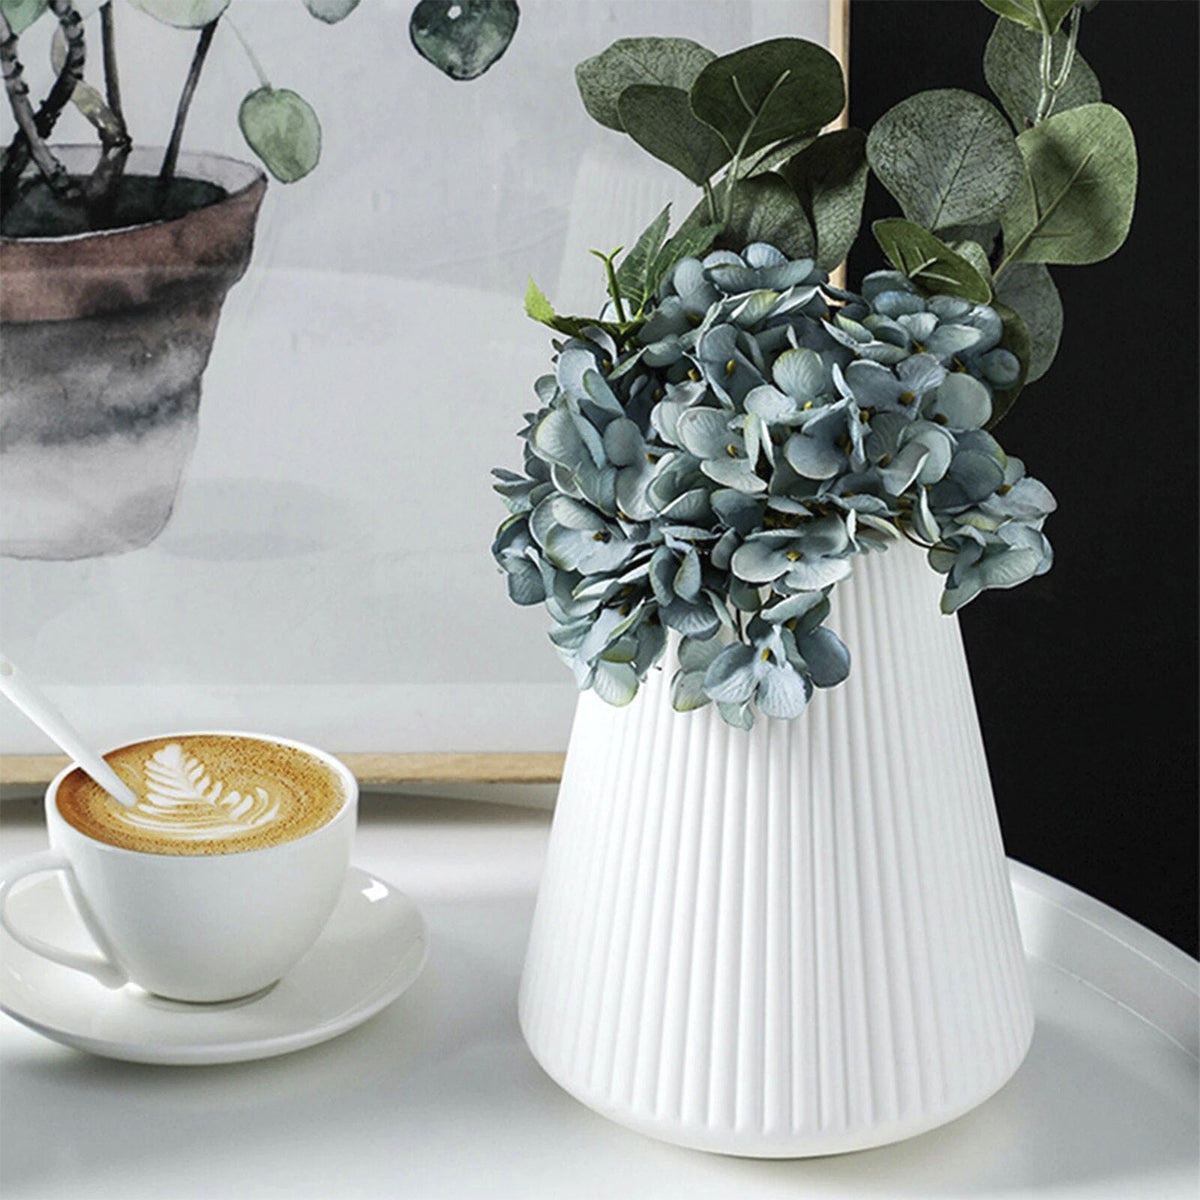 Plastic Vase For Home Decor